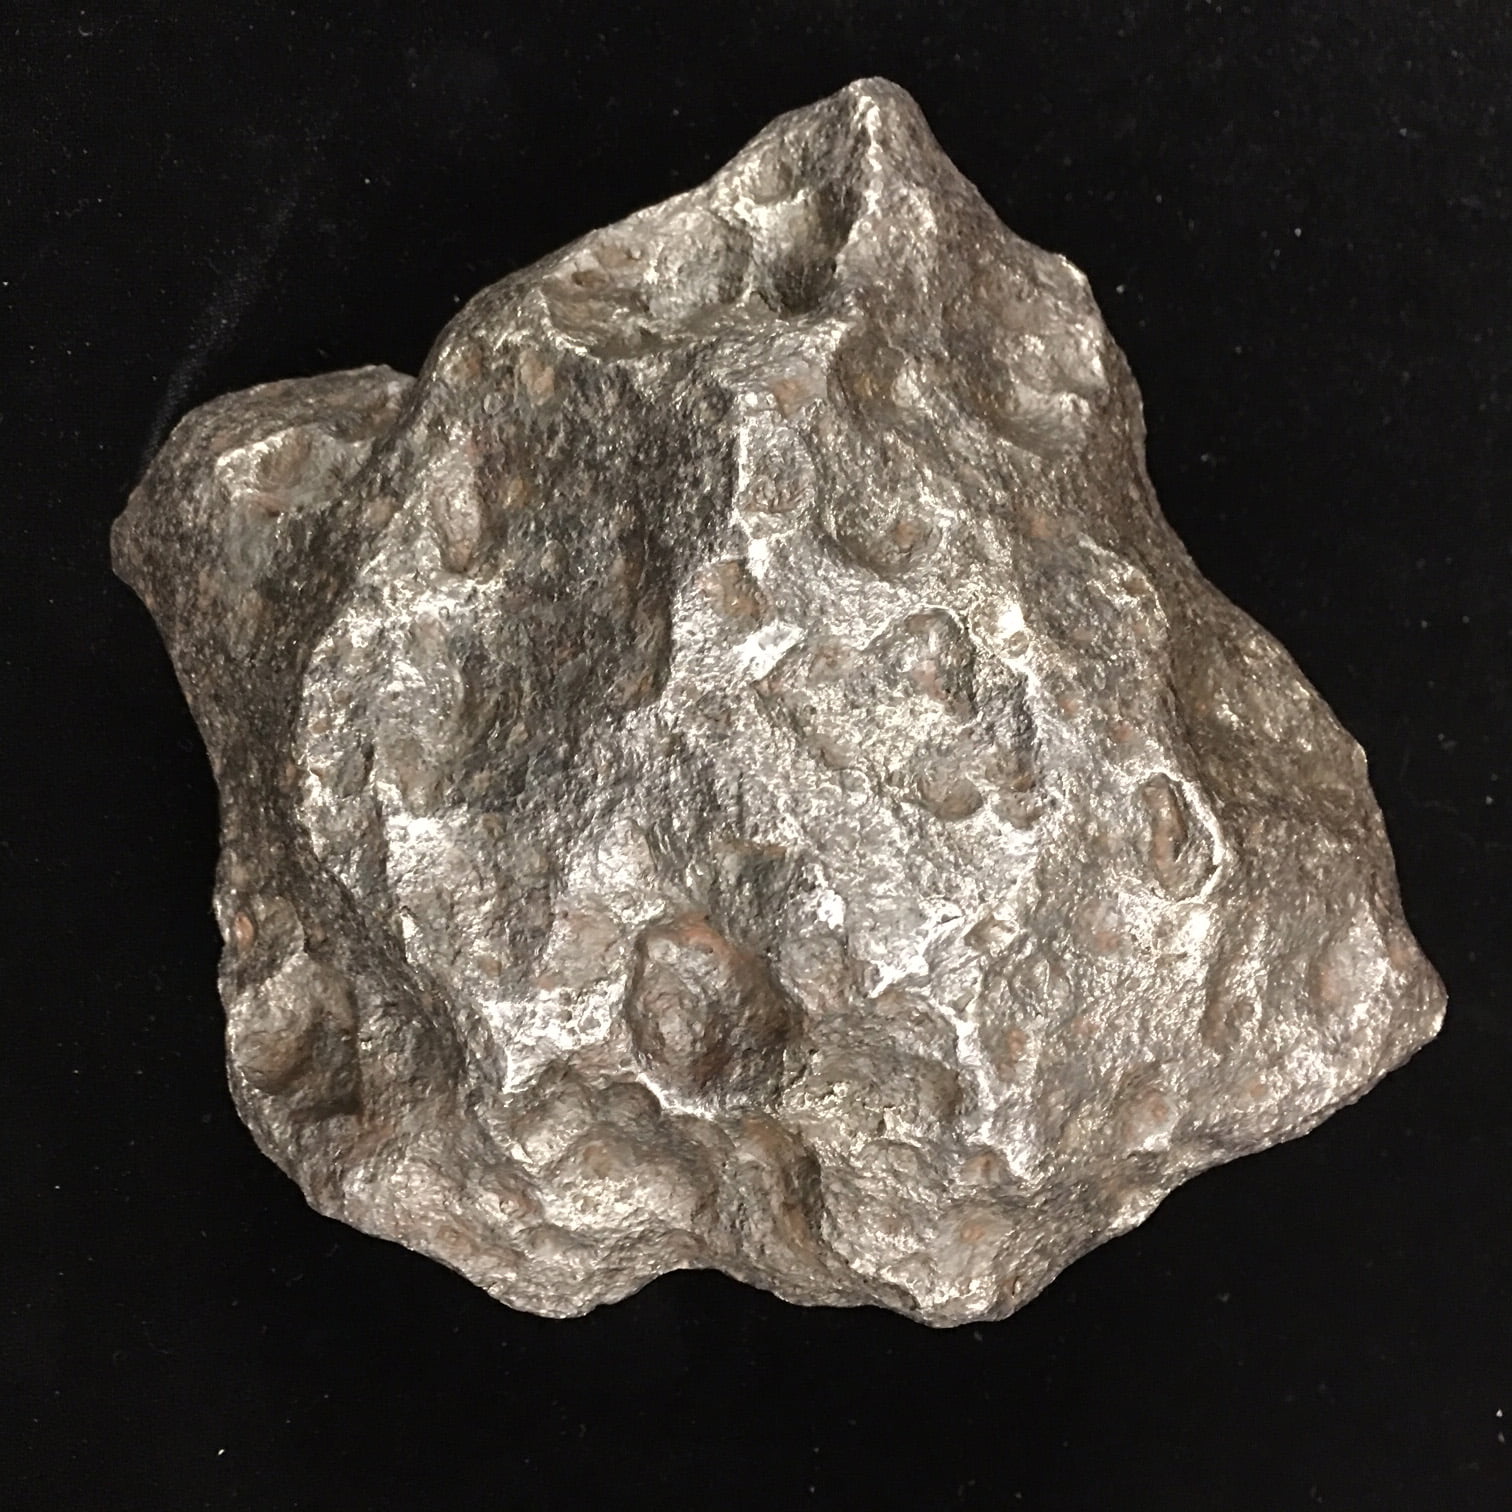 Huge Campo Del Cielo Iron Meteorite 7.166 KG OR 15.79 LBS